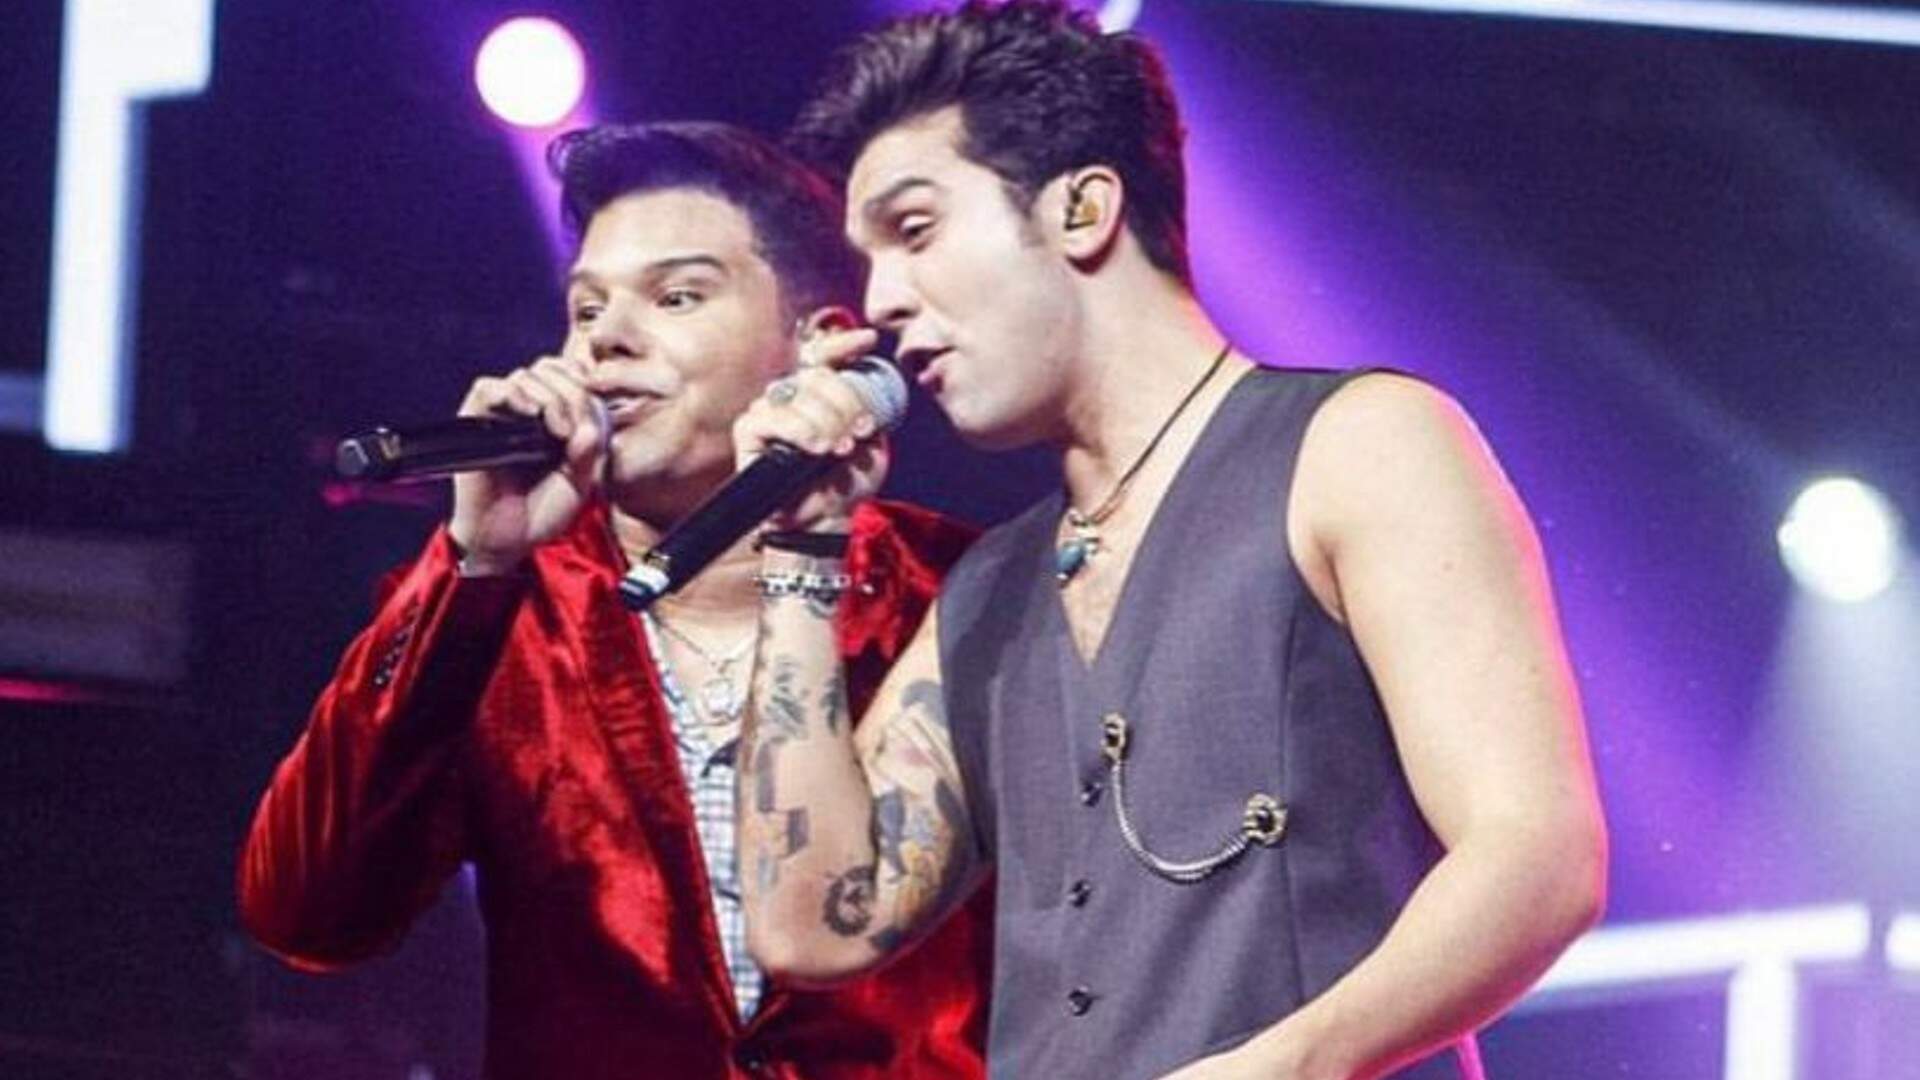 Tierry anuncia lançamento de parceria musical com Luan Santana e avisa aos fãs: “Será mais um hit” - Metropolitana FM